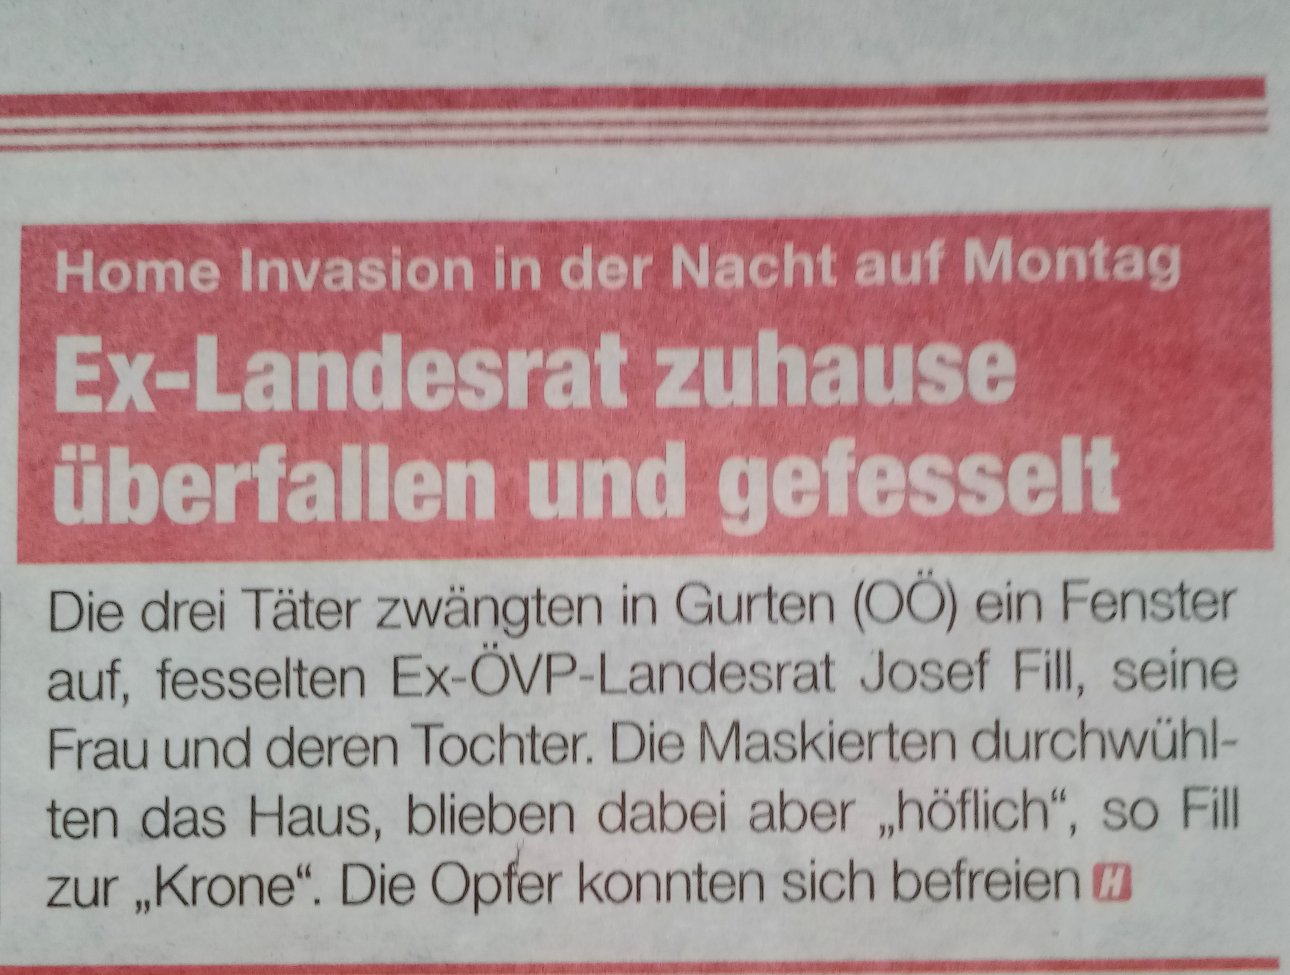 Zeitungsausschnitt von der Heute über die Home Invasion in Oberösterreich bei einem Landrat